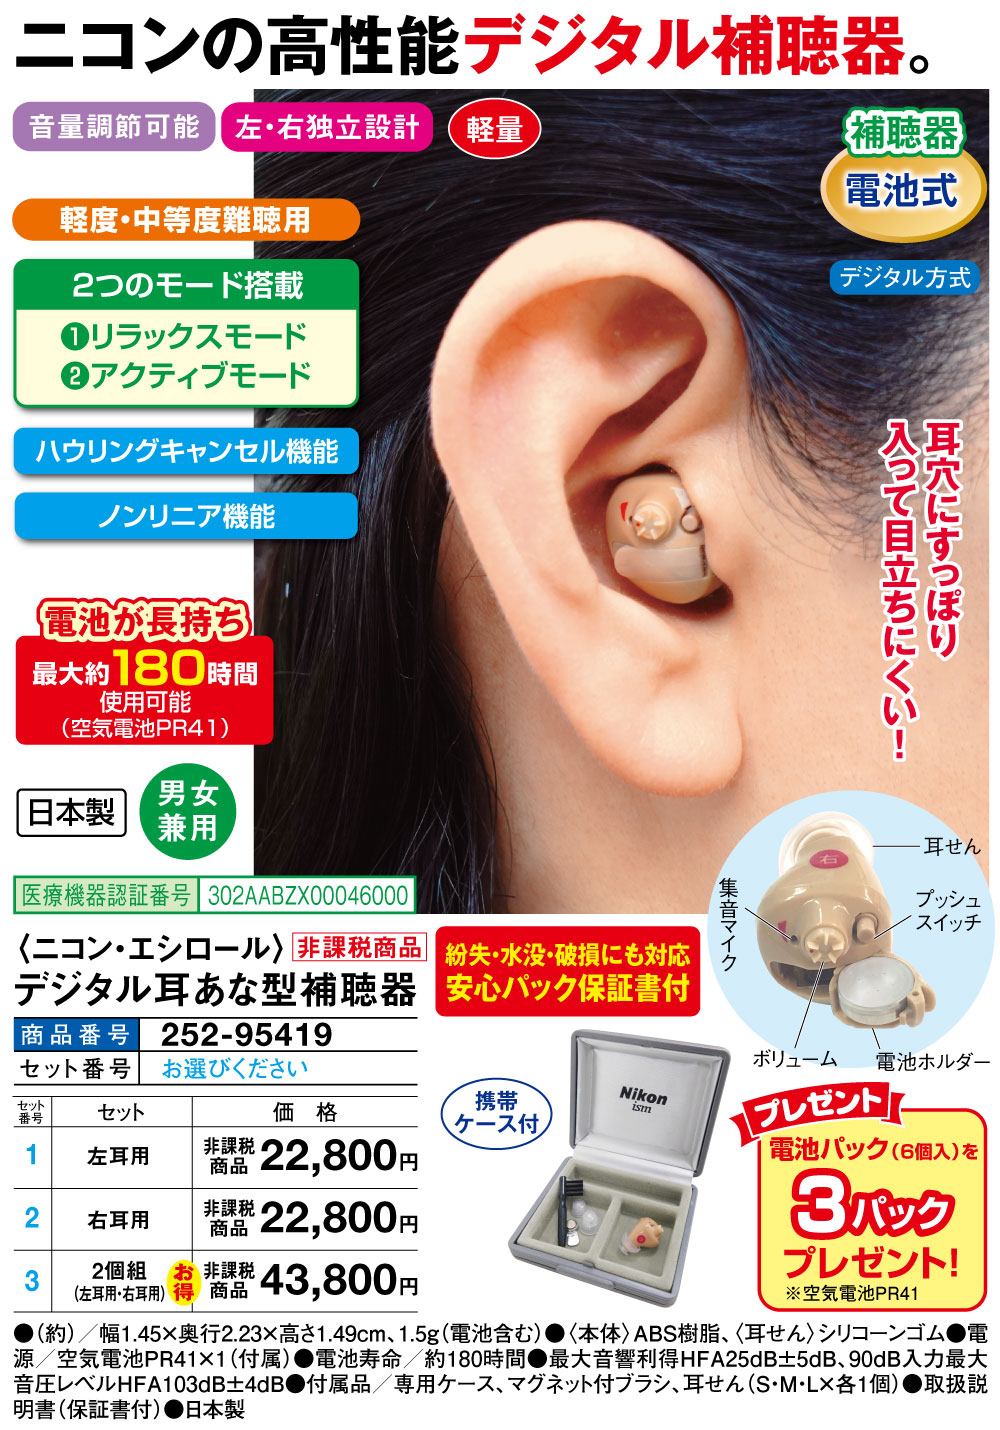 2022 新作 耳穴式デジタル補聴器 ニコン エシロールISMイヤファッション ND-F2 L 左耳用70 000円 sarozambia.com